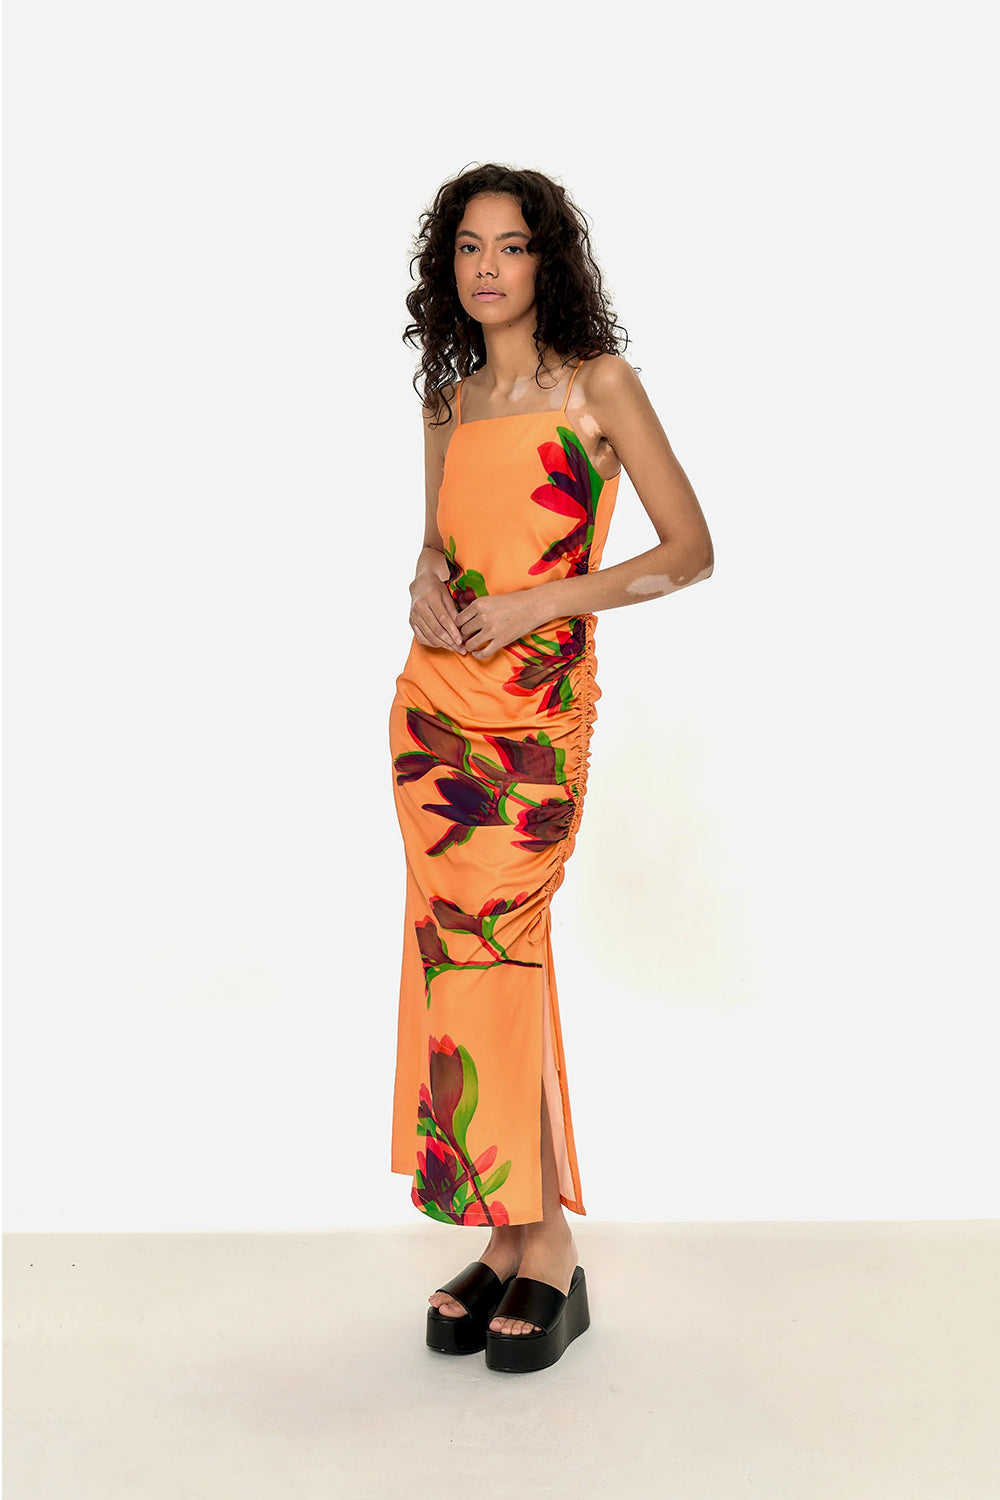 vestido naranja con fantasia floreal tiras cruzadas en la espalda